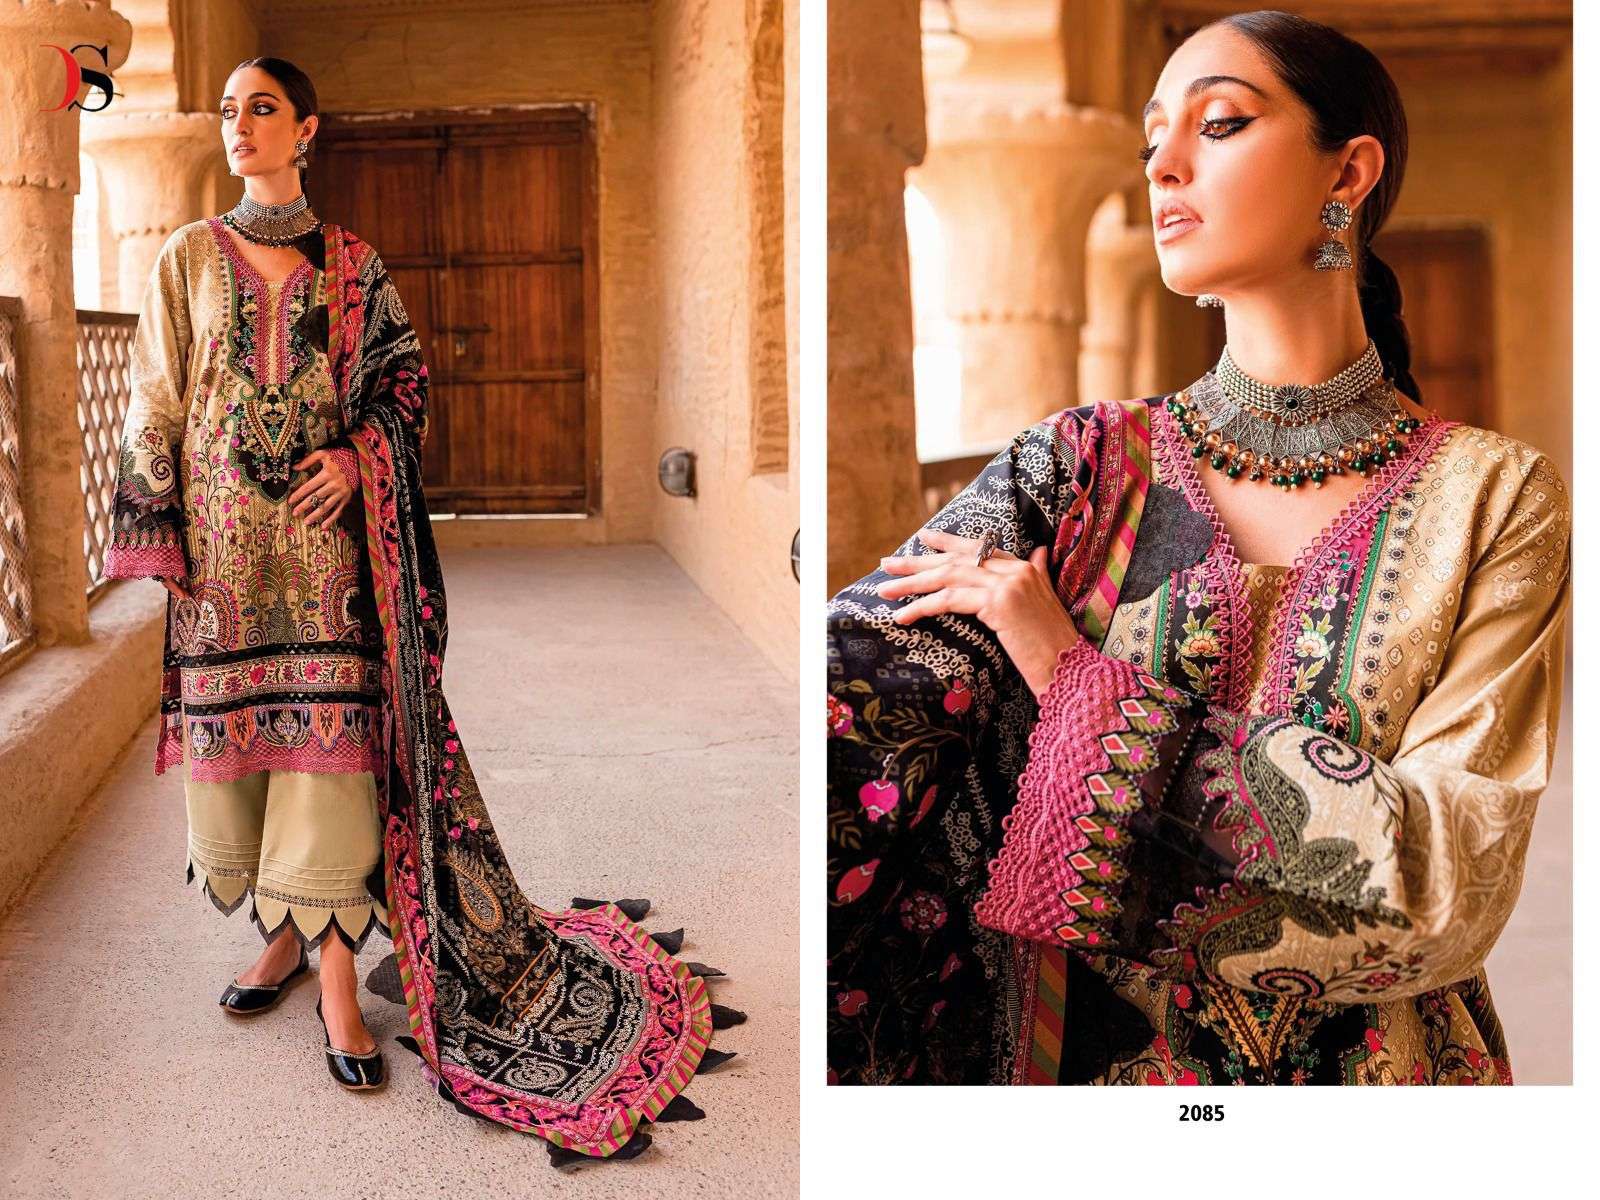 deepsy suits firdous urbane vol-23 2081-2088 series pure cotton designer pakistani salwar suits surat